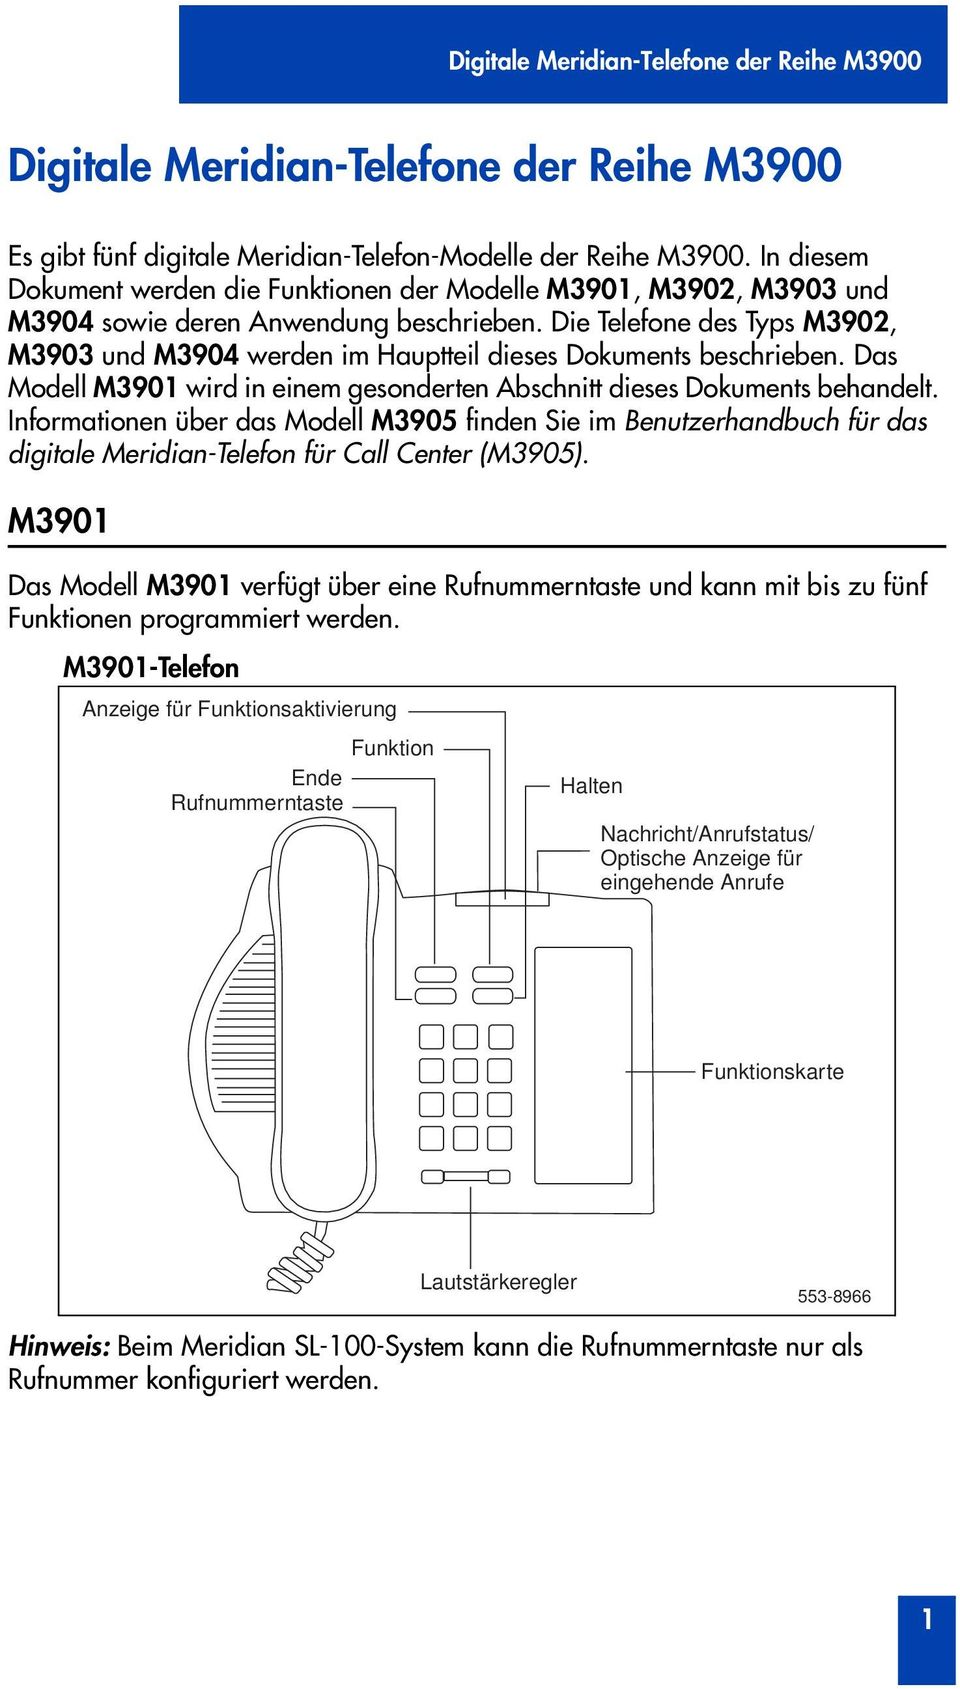 Die Telefone des Typs M3902, M3903 und M3904 werden im Hauptteil dieses Dokuments beschrieben. Das Modell M3901 wird in einem gesonderten Abschnitt dieses Dokuments behandelt.